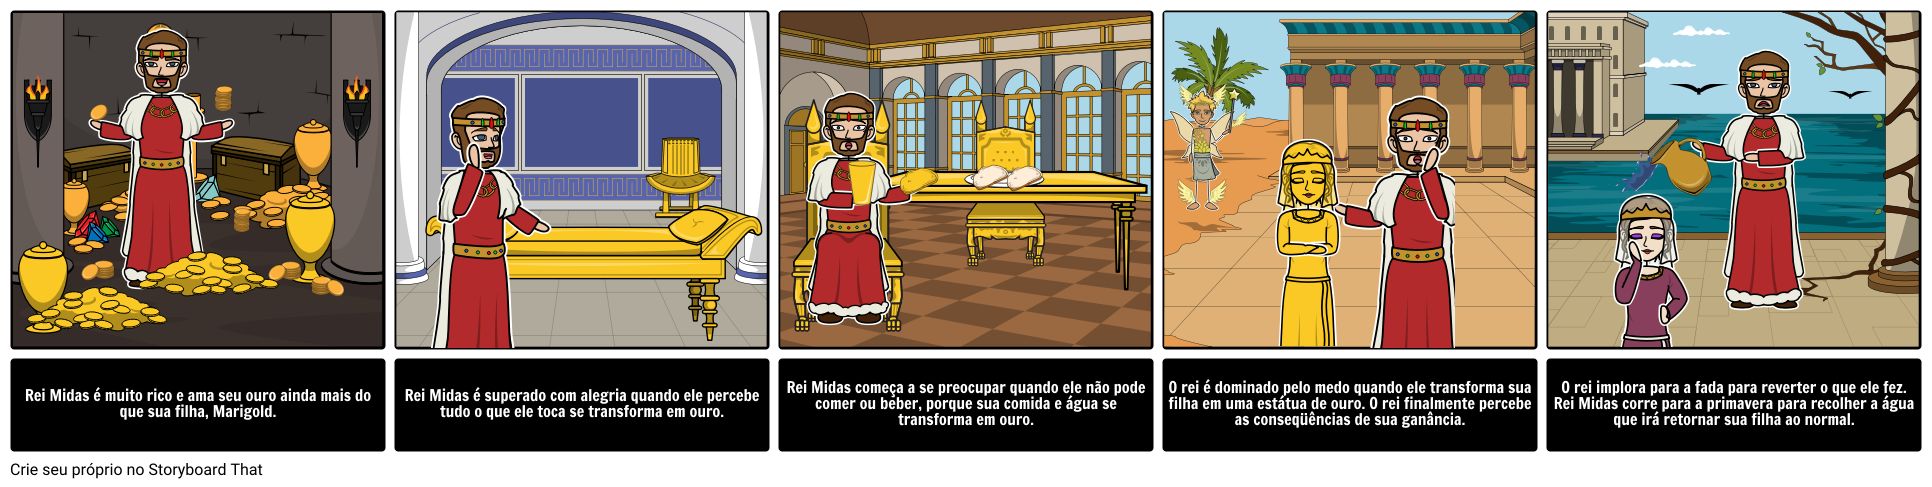 King Midas 'toque Dourado Análise de Caracteres